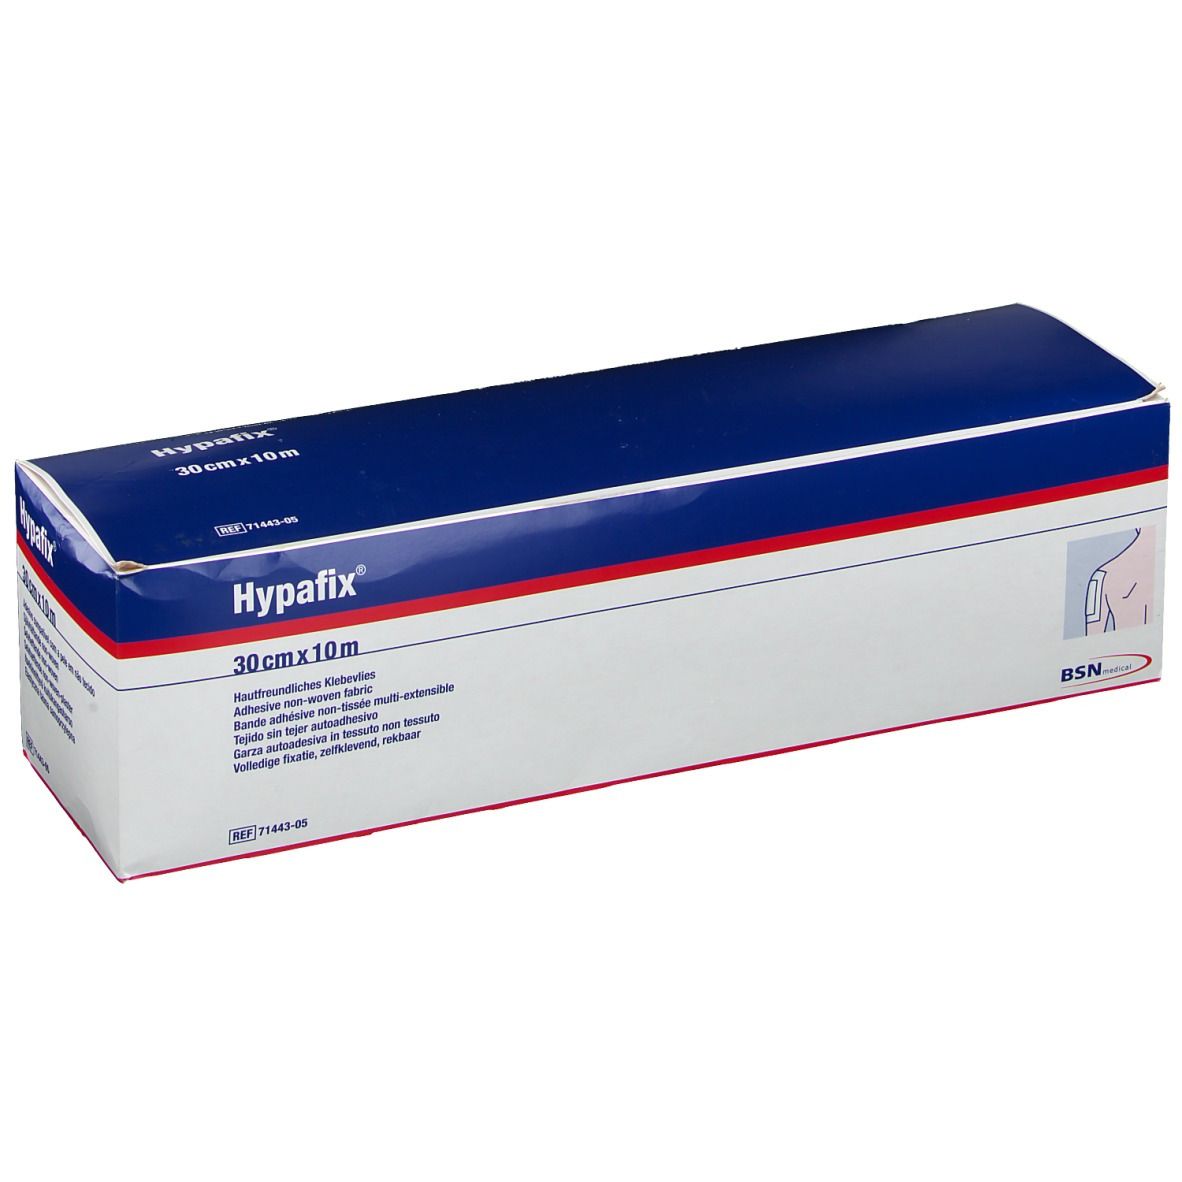 Hypafix 30cm x 10m